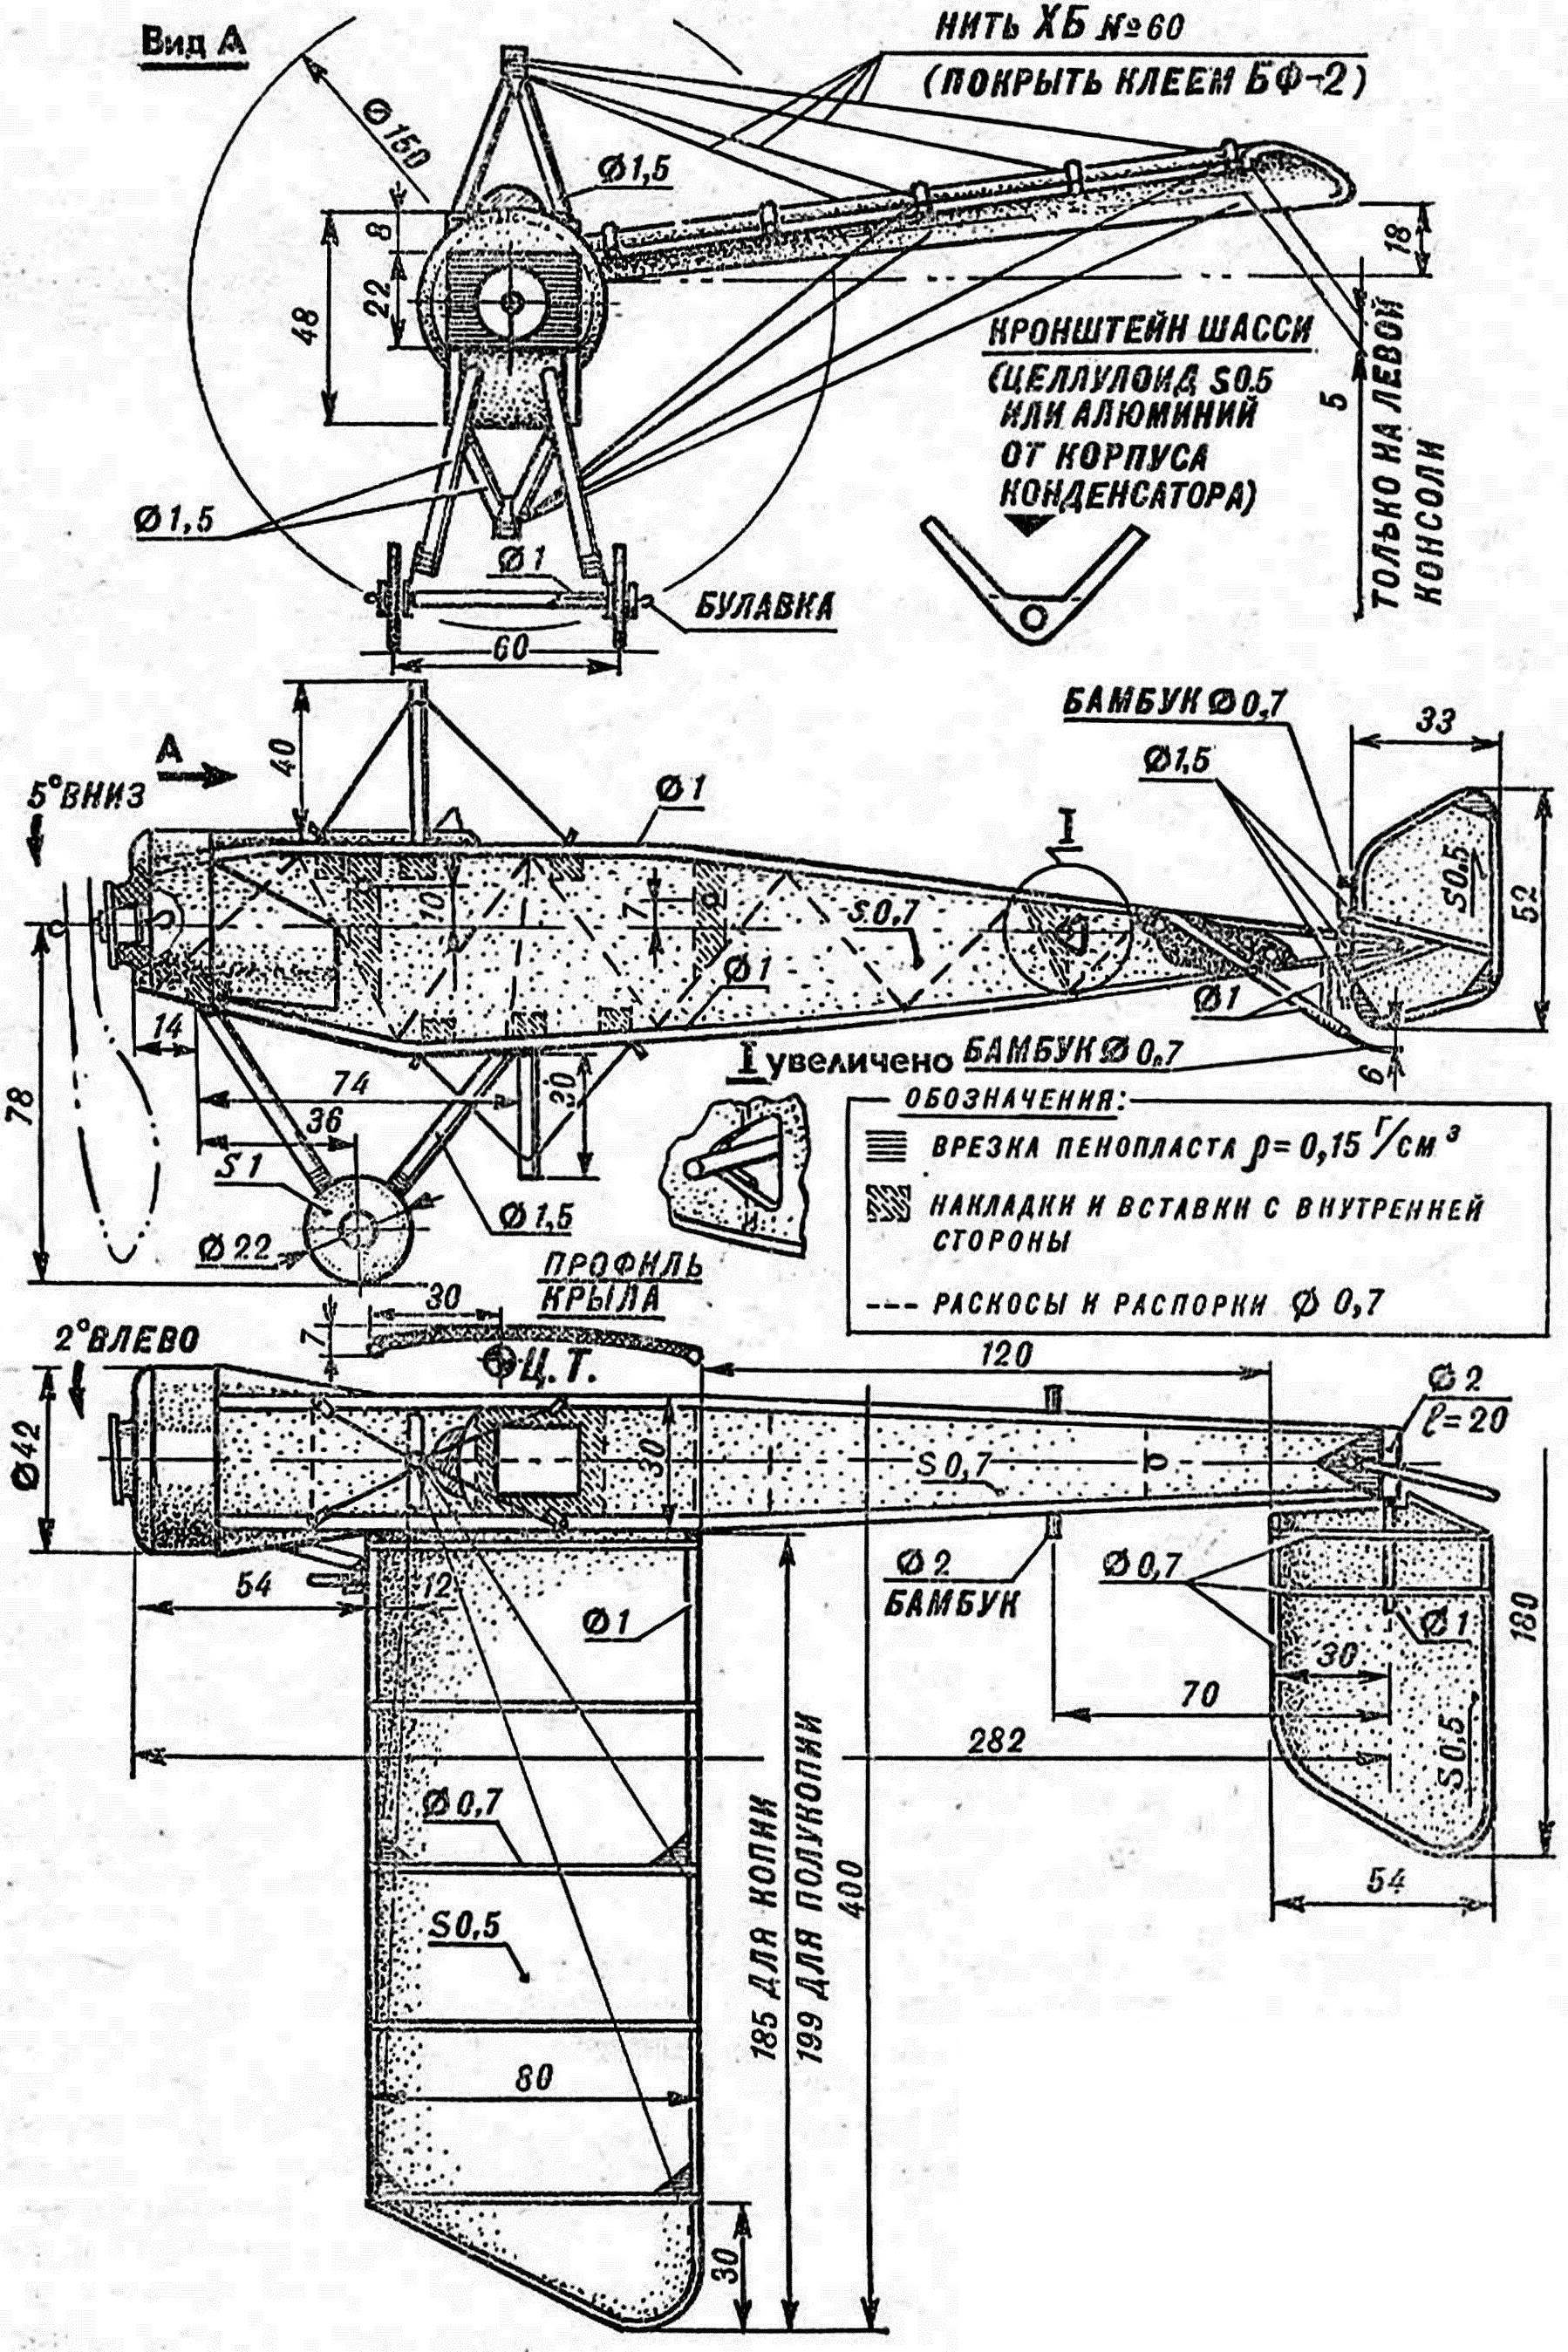 Fig. 1. Rezinomotornaya Svobodnaya models